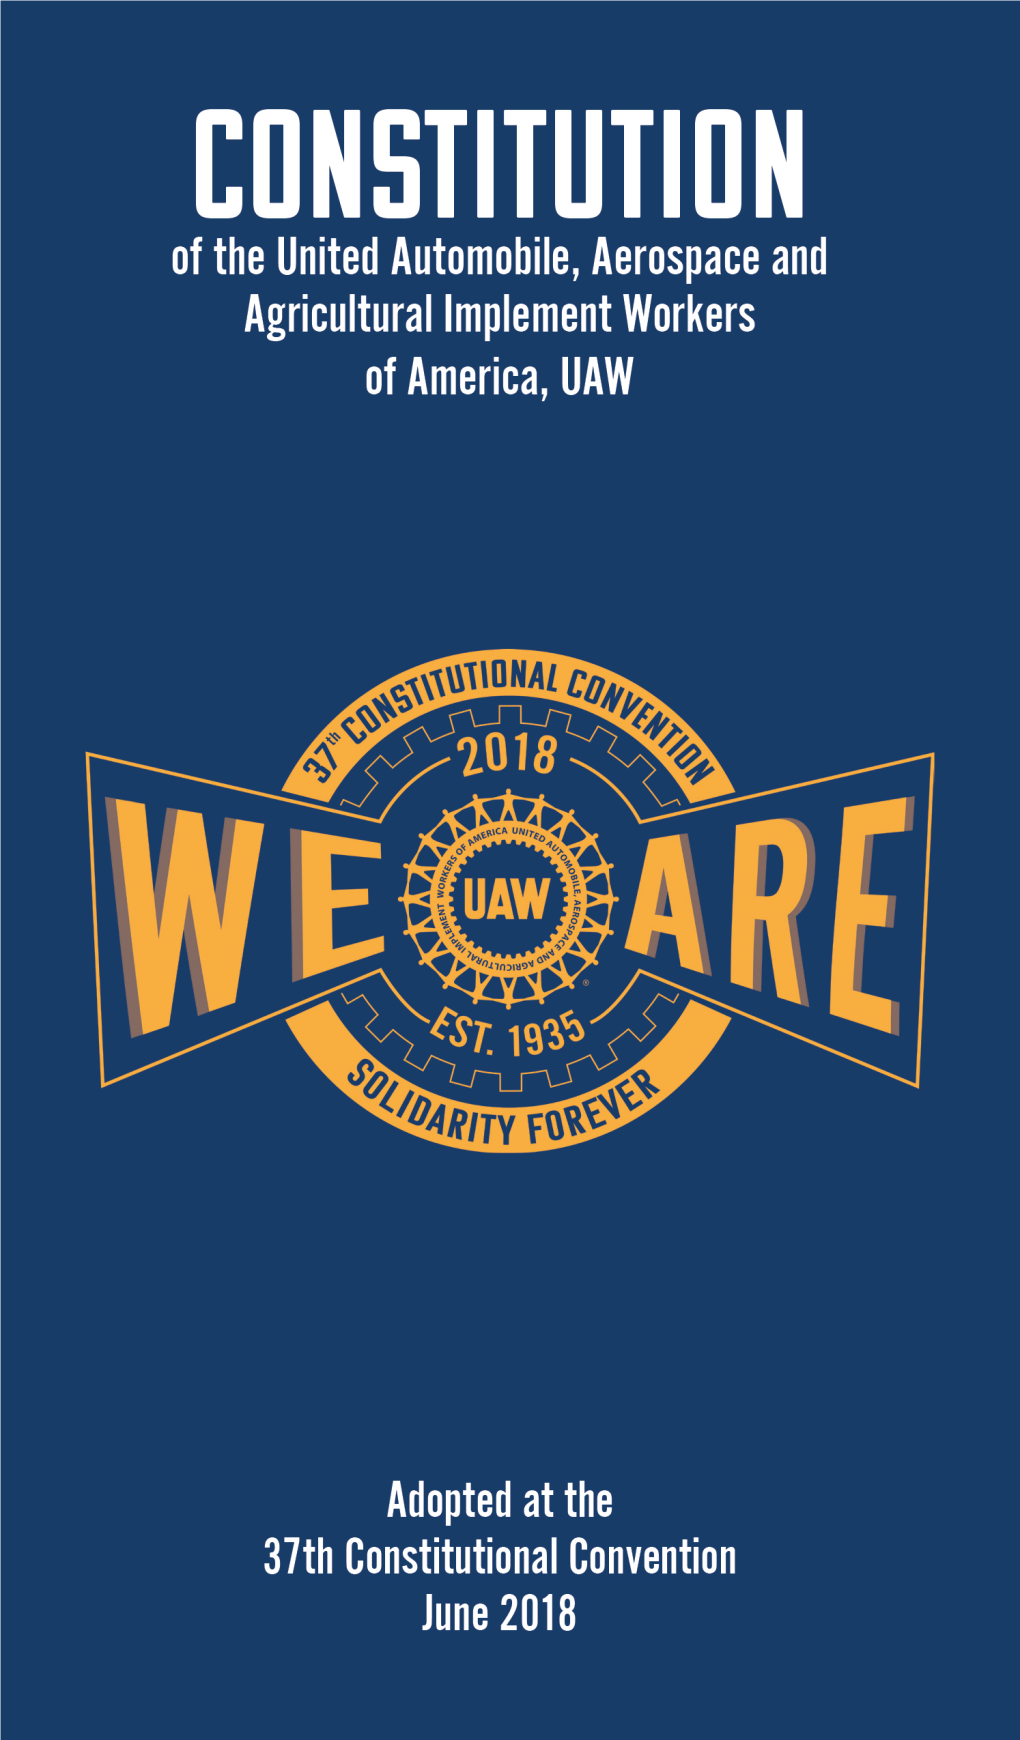 UAW's Constitution